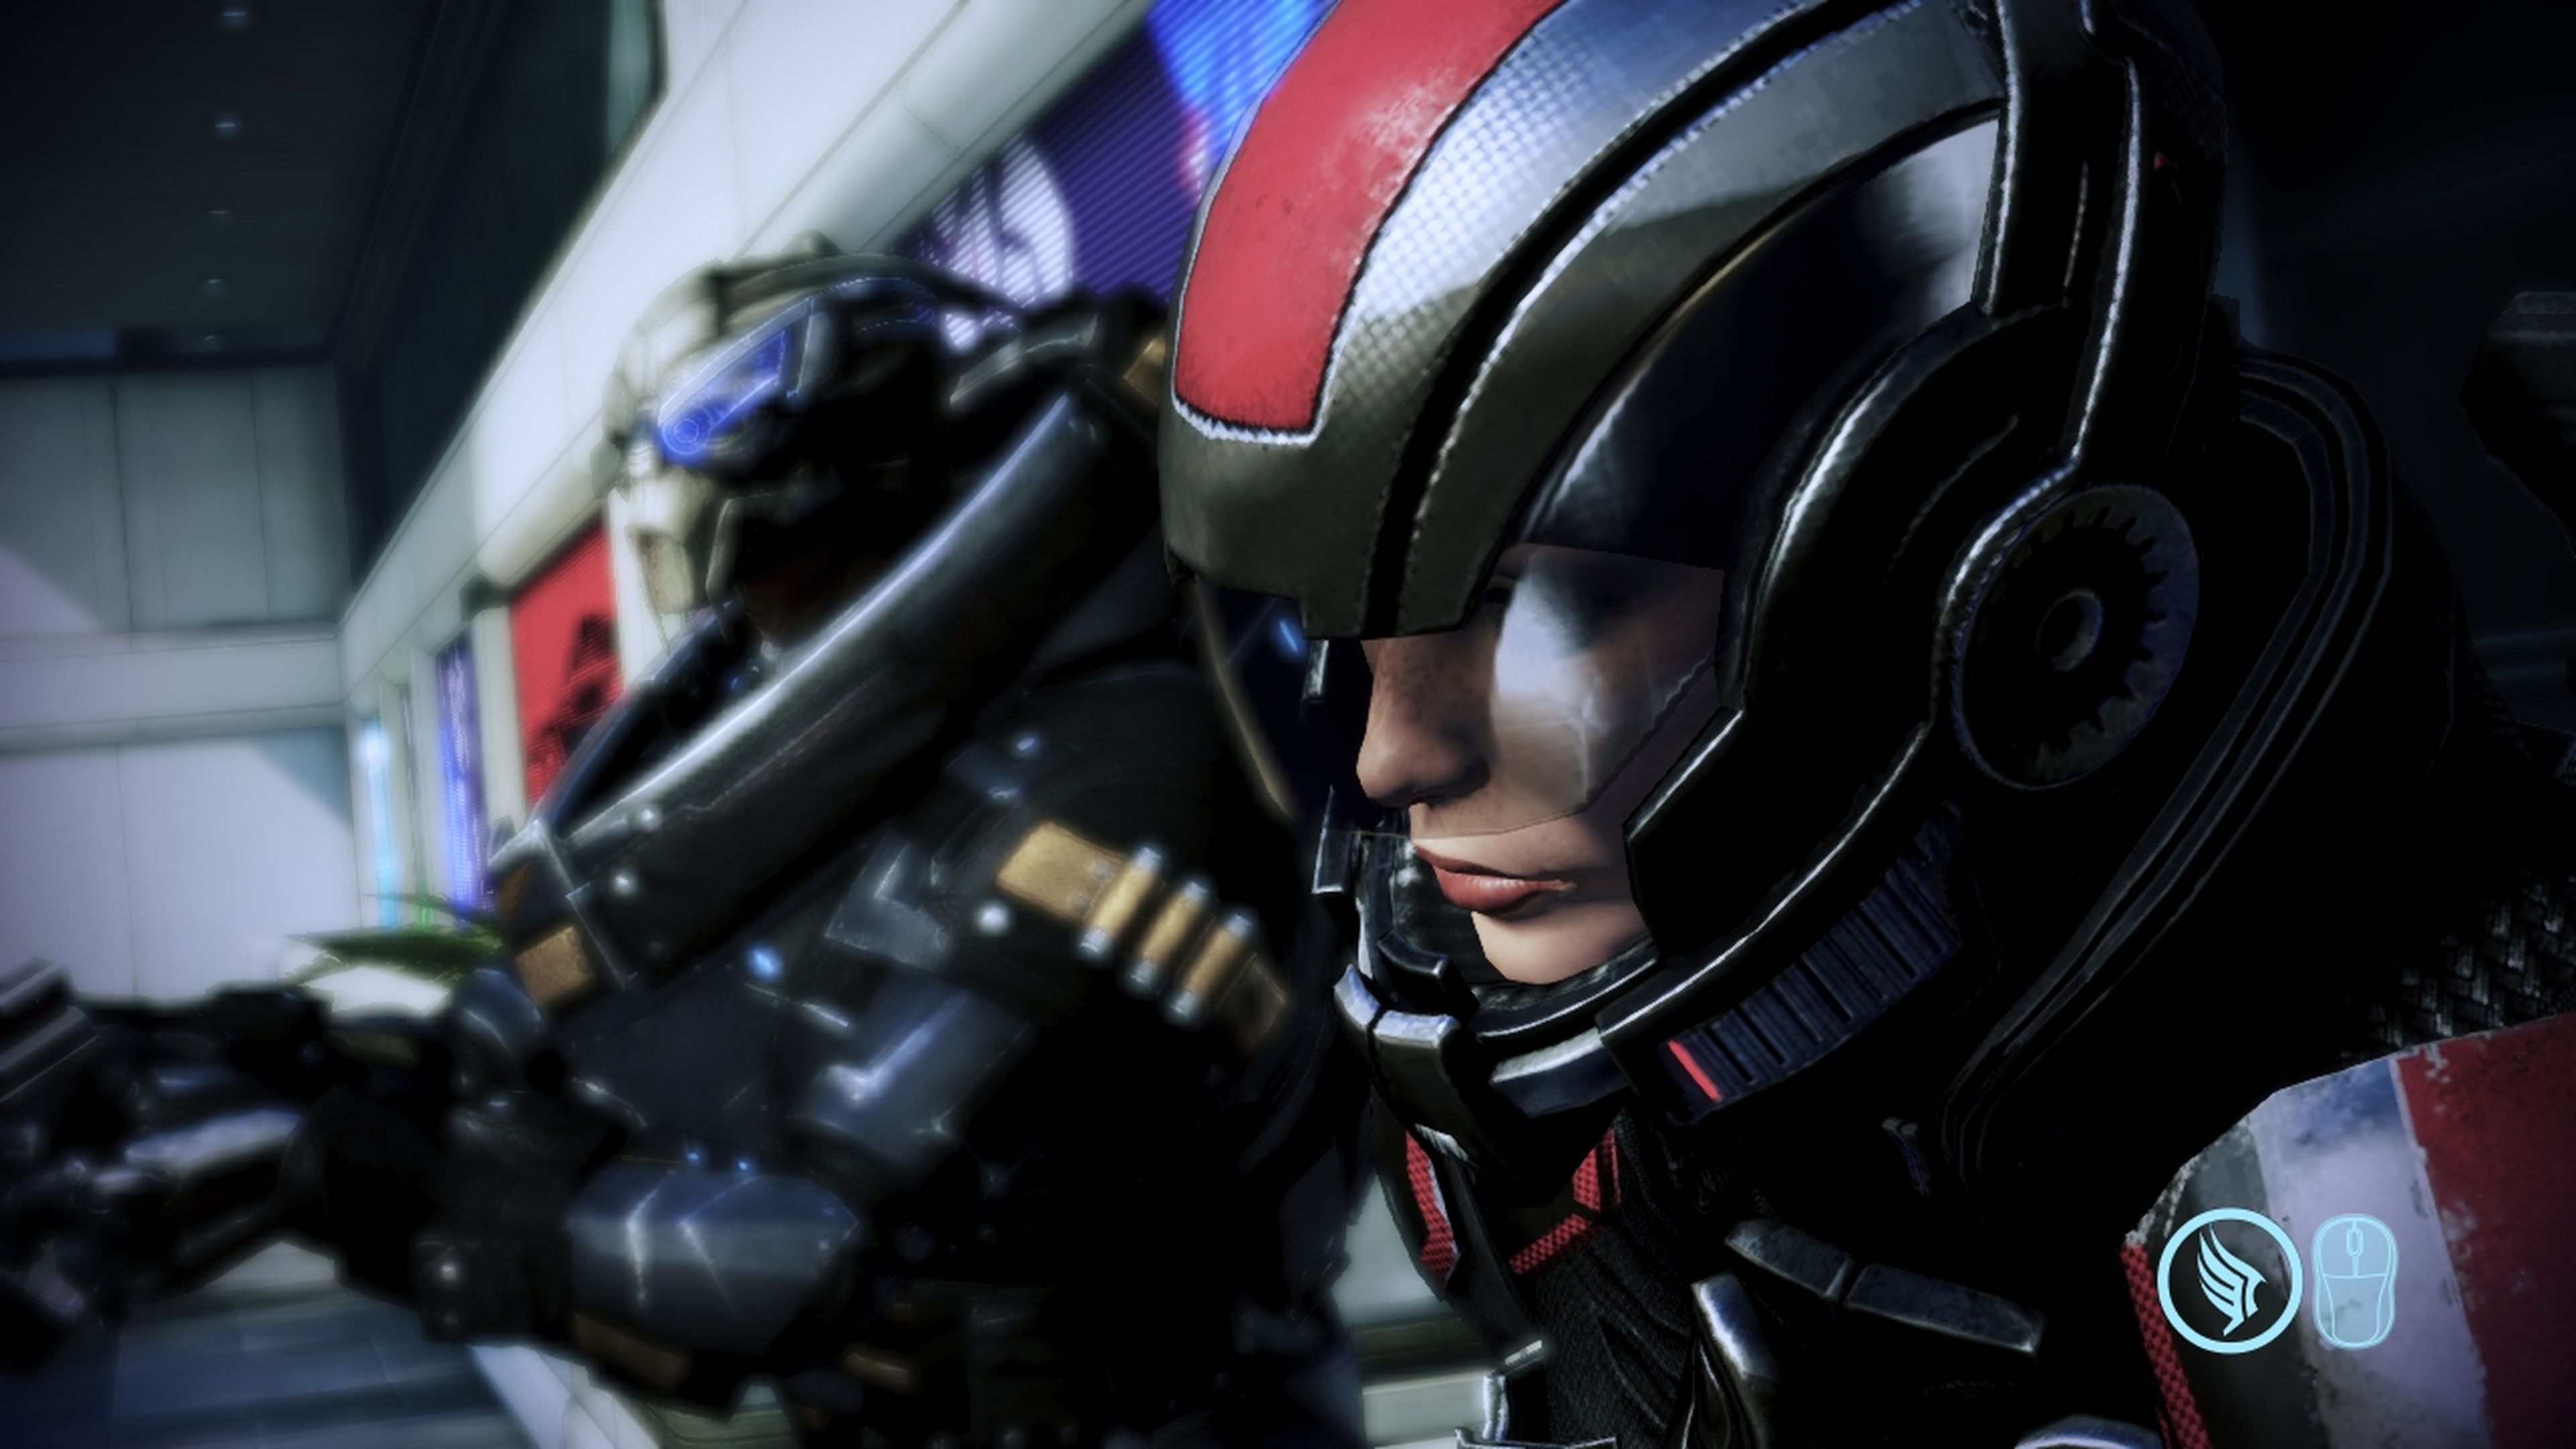 Análisis en vídeo con MP de Mass Effect 3